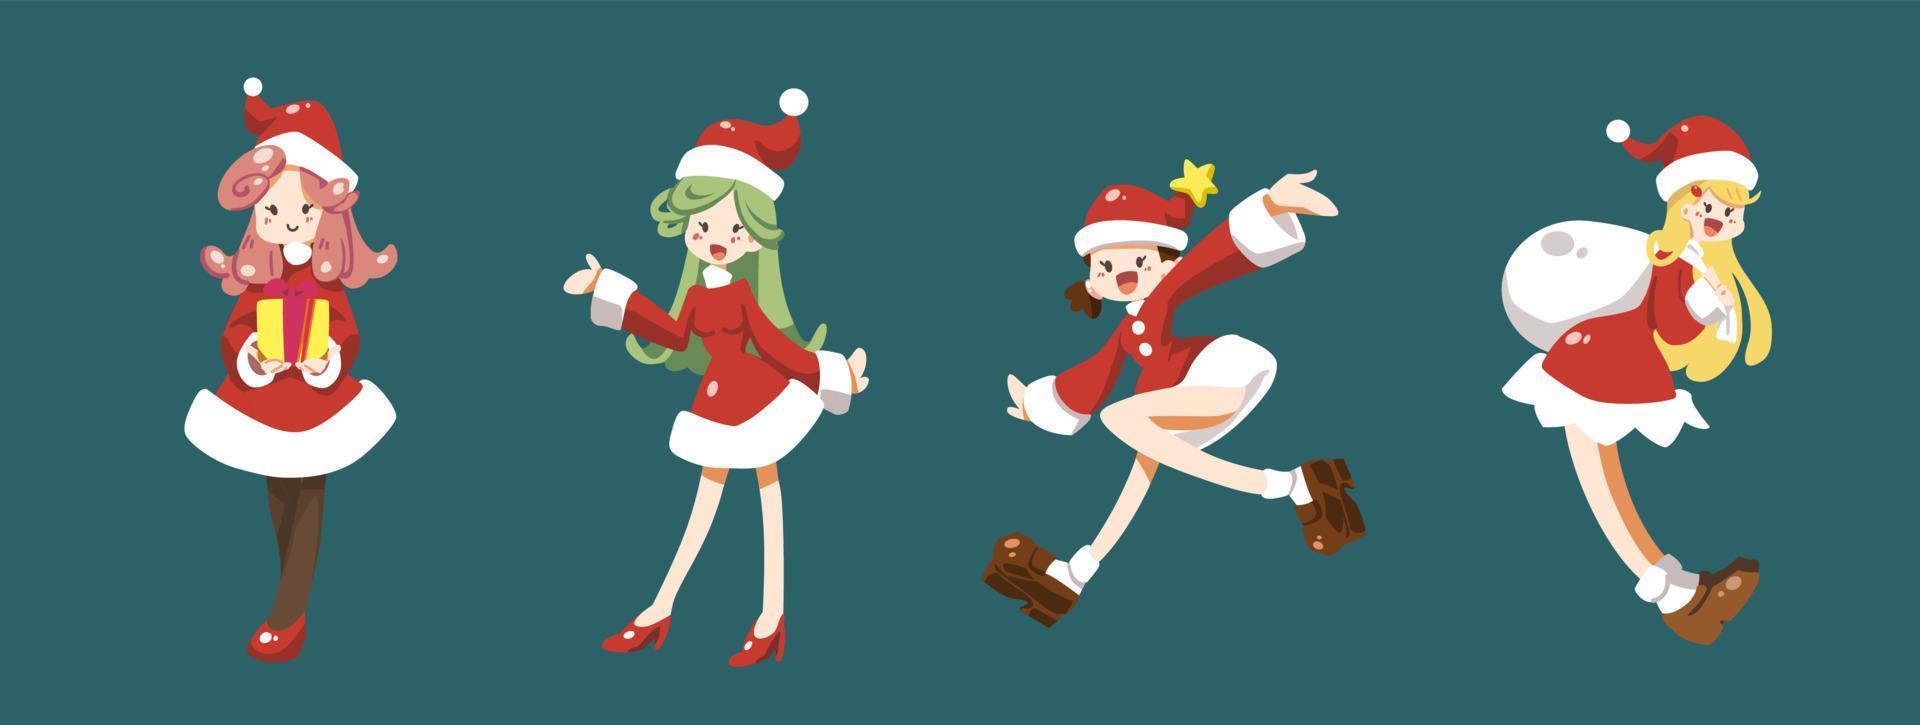 satz der flachen vektorillustration der netten santa-mädchenzeichentrickfilm-figur lokalisiert auf hintergrund. Frohe Weihnachten und ein glückliches Neues Jahr. Mädchen mit Sankt-Kostüm in der Weihnachtsfeier. vektor